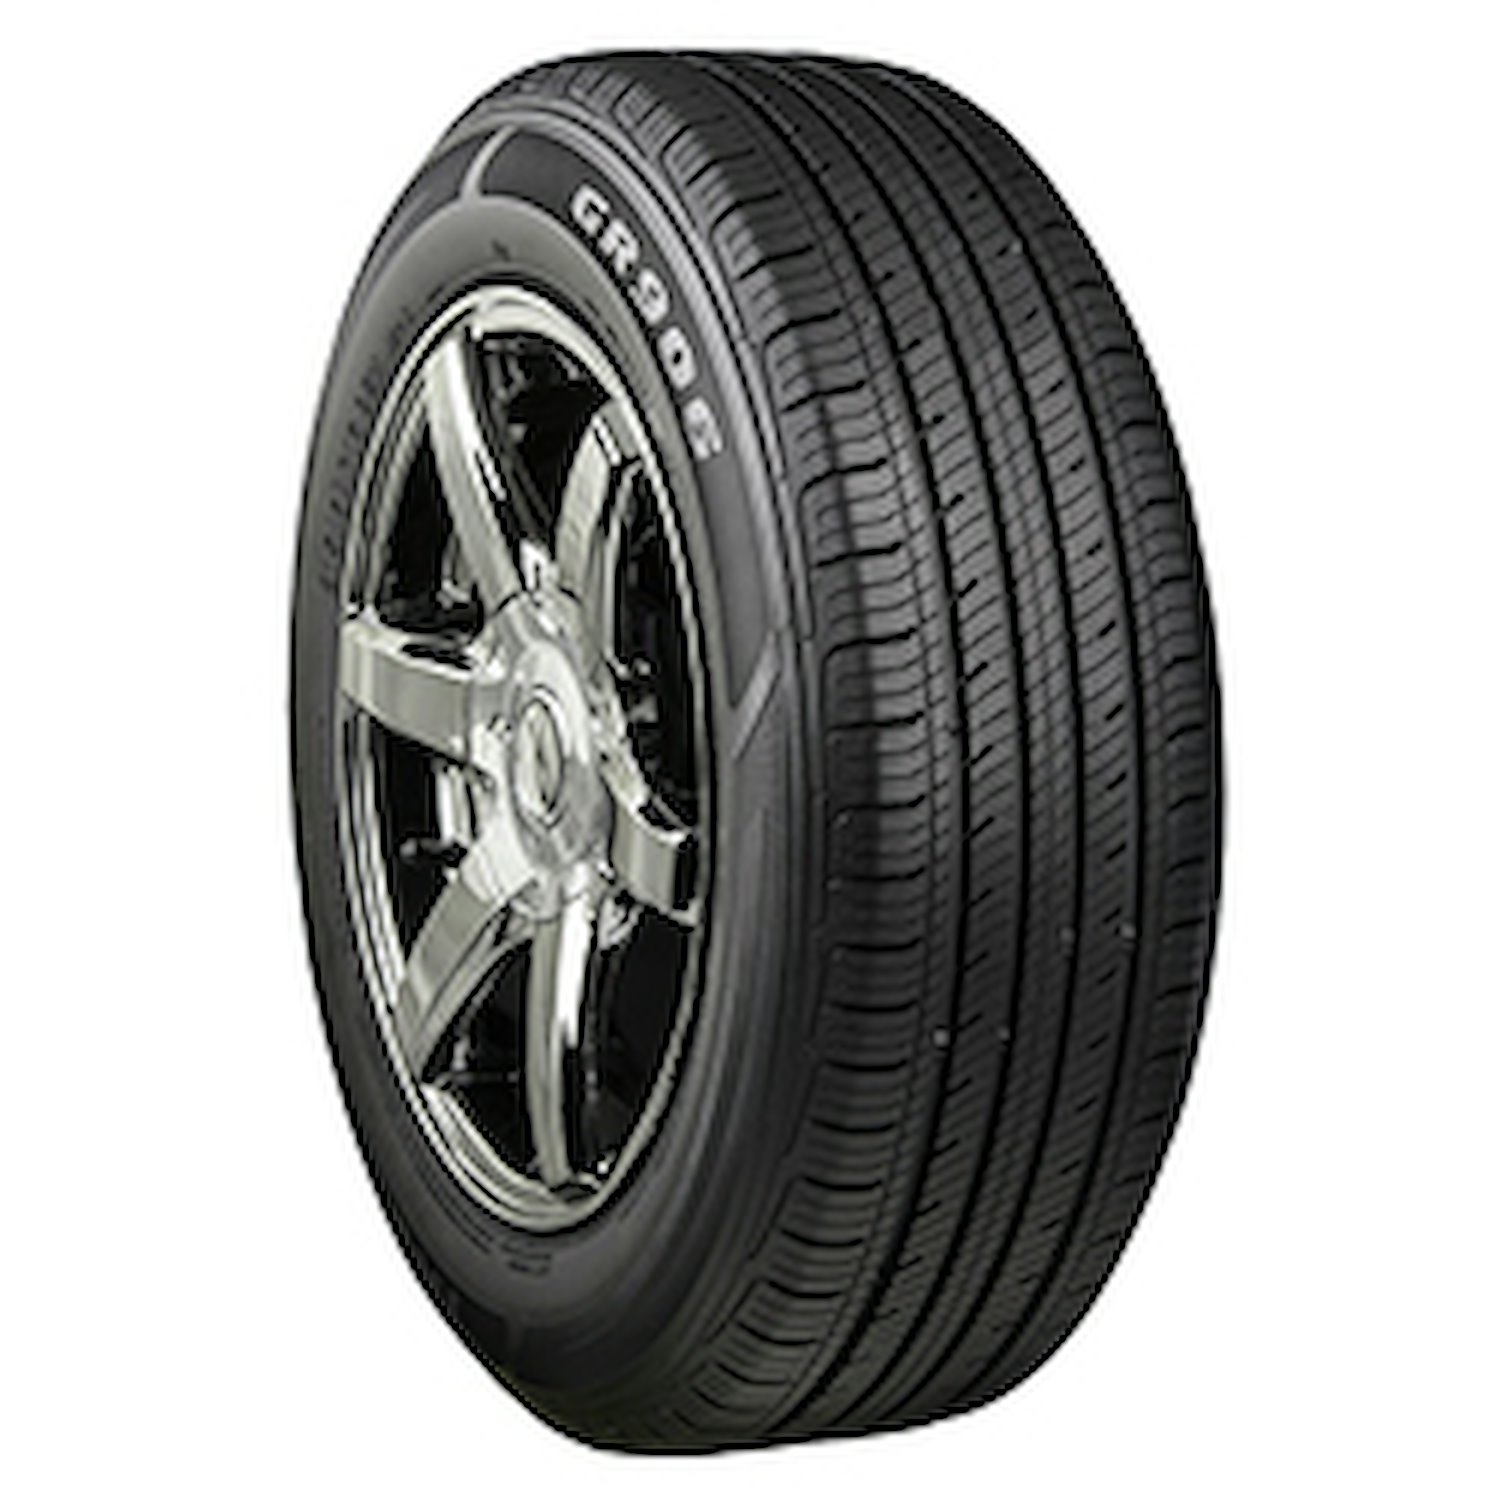 GR906 Tire, 175/65R14 82H